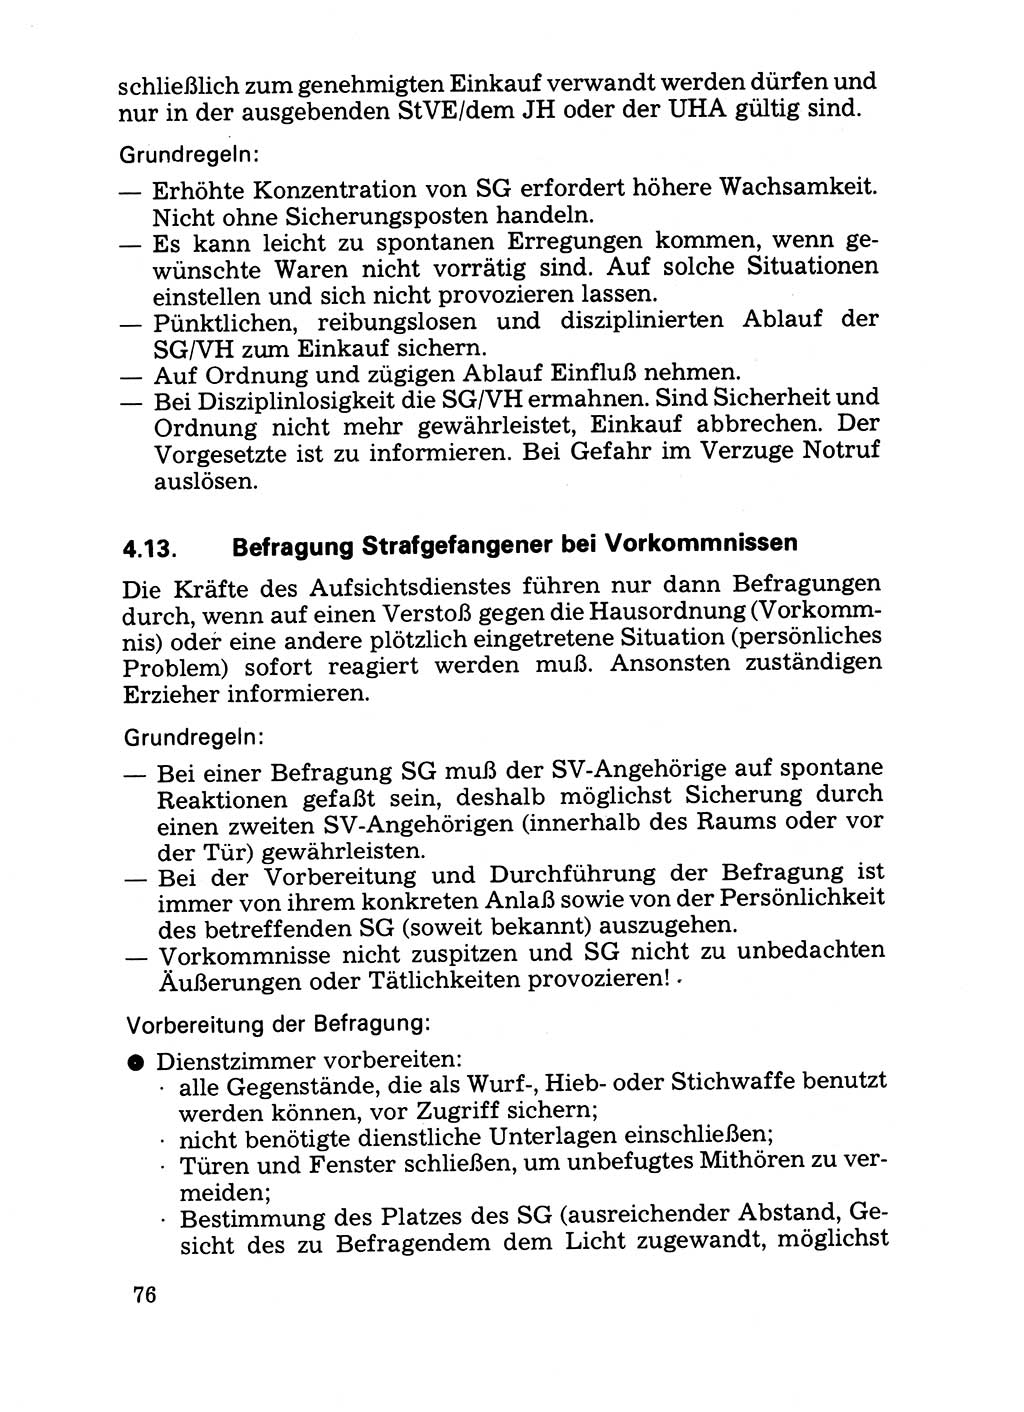 Handbuch für operative Dienste, Abteilung Strafvollzug (SV) [Ministerium des Innern (MdI) Deutsche Demokratische Republik (DDR)] 1981, Seite 76 (Hb. op. D. Abt. SV MdI DDR 1981, S. 76)